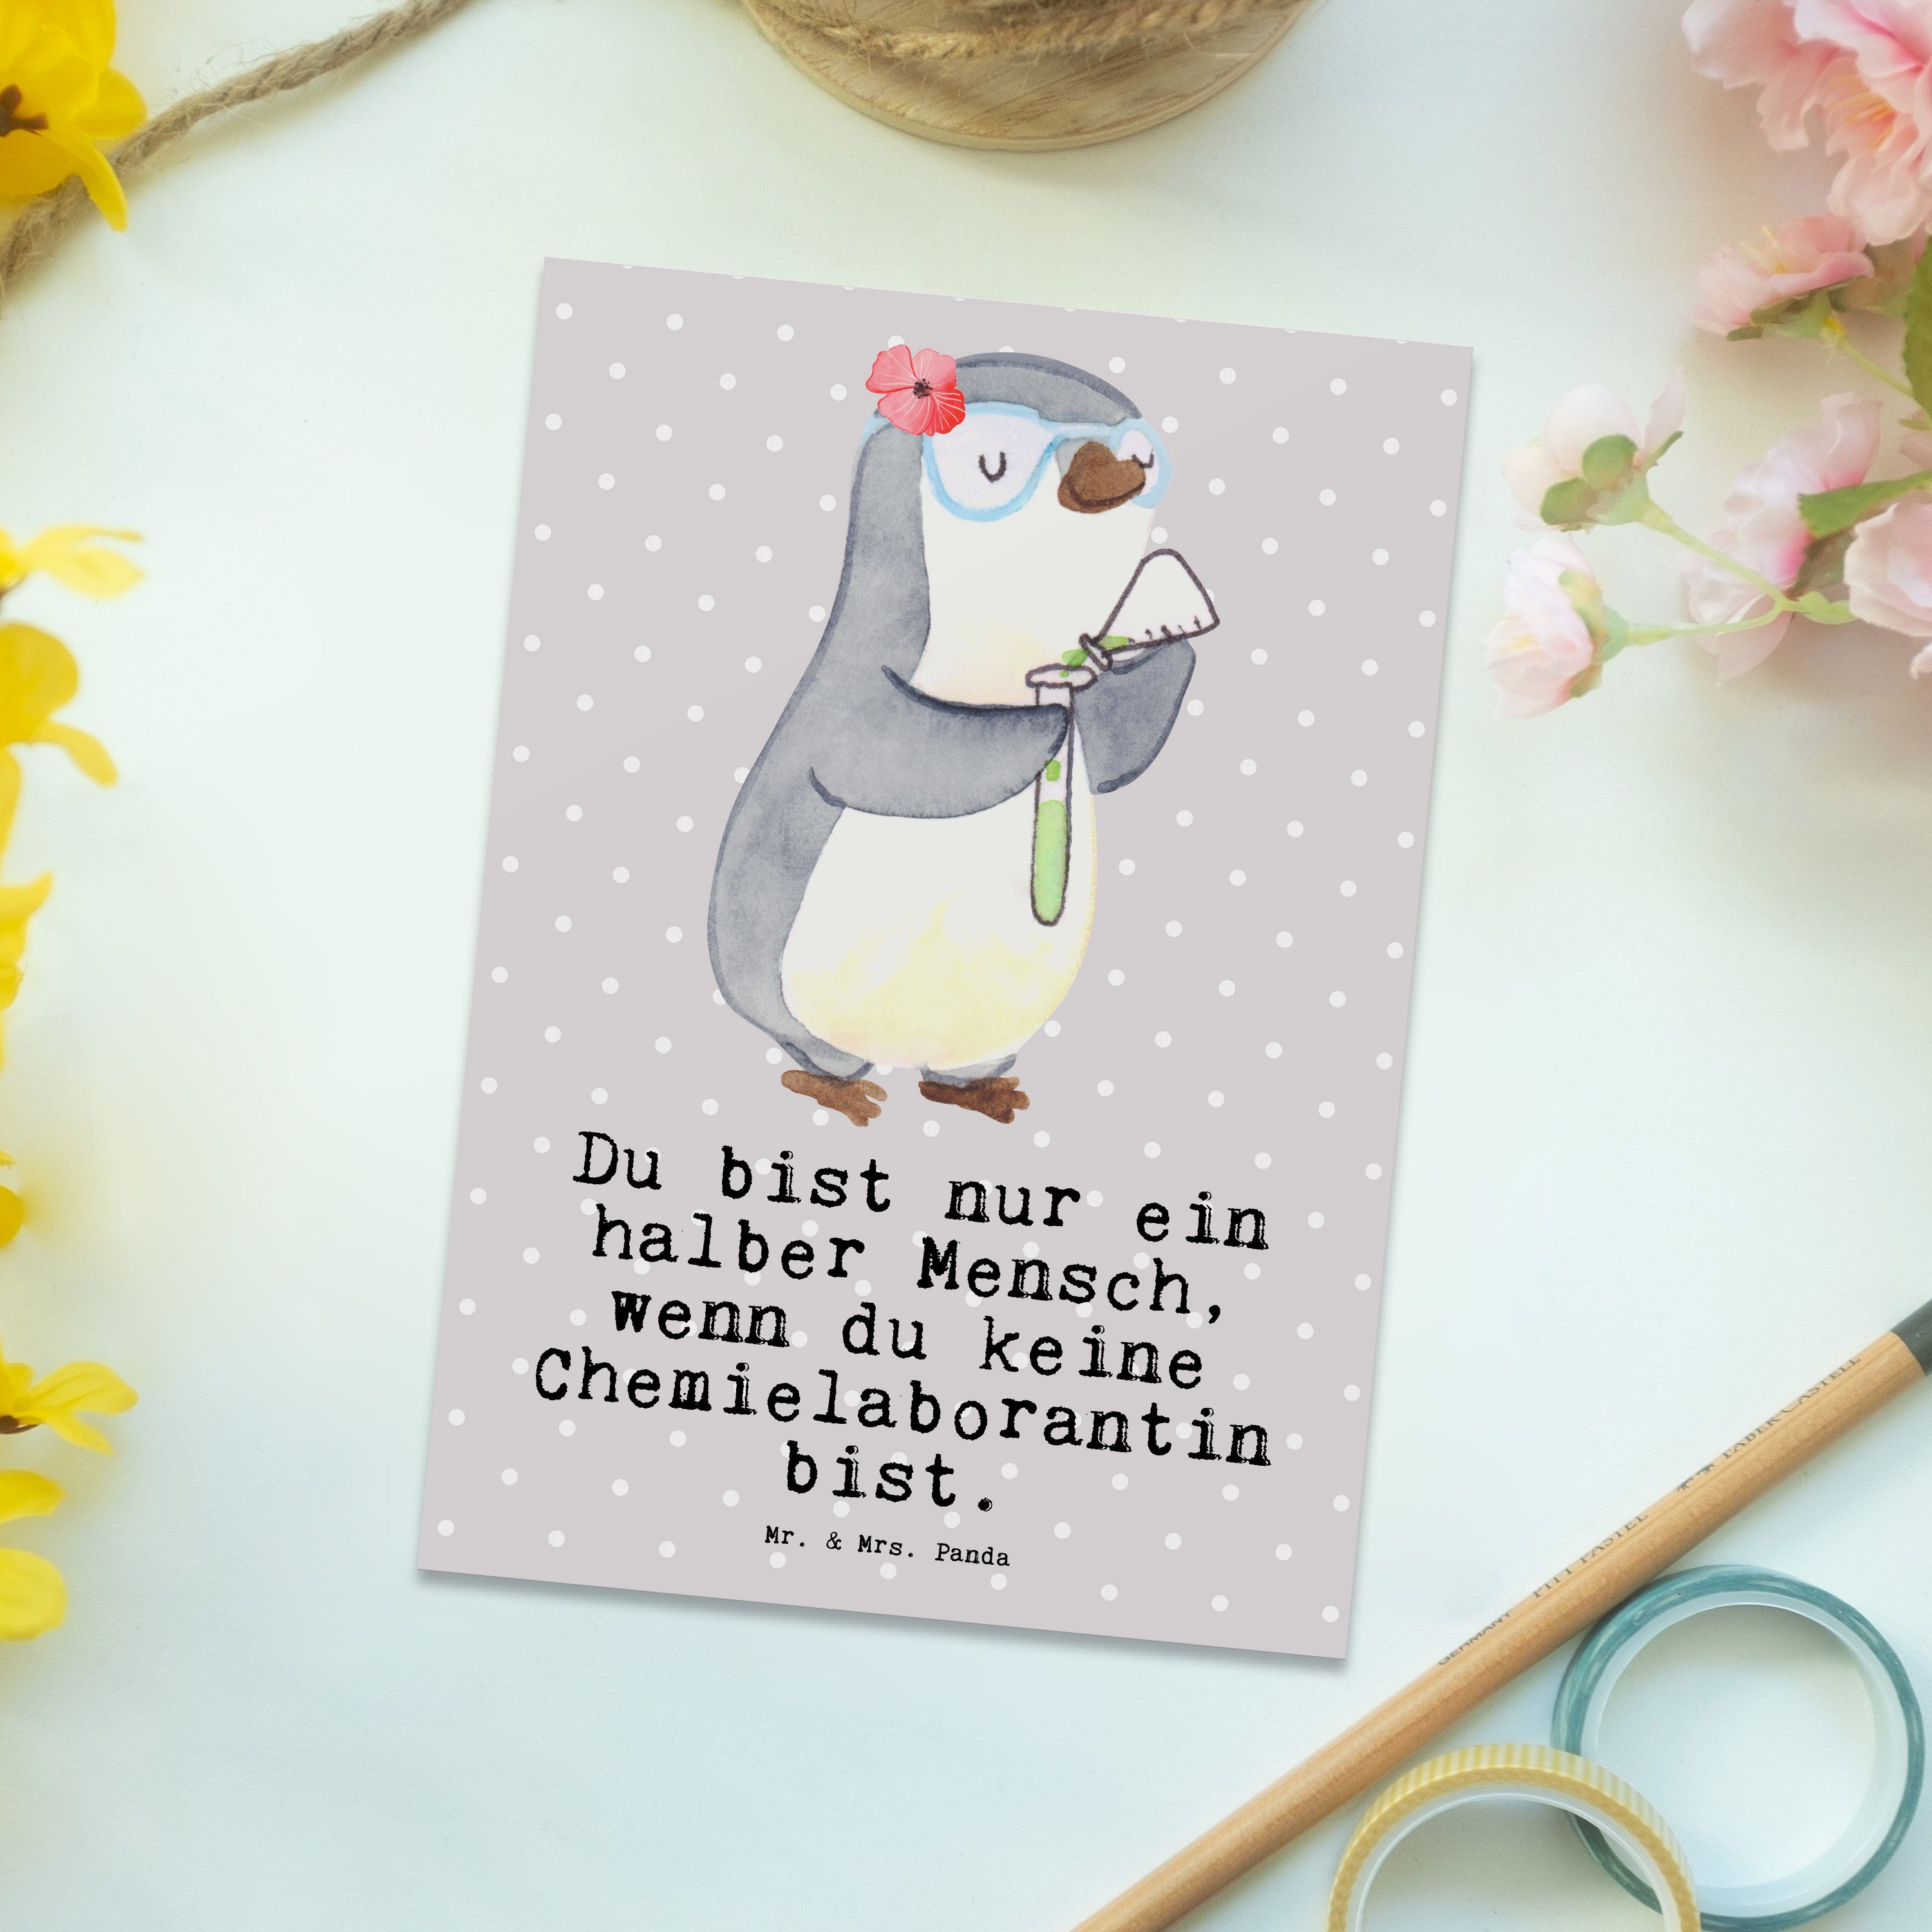 Mr. & Mrs. Herz - Chemieunterricht - Postkarte Pastell Chemielaborantin mit Panda Geschenk, Grau